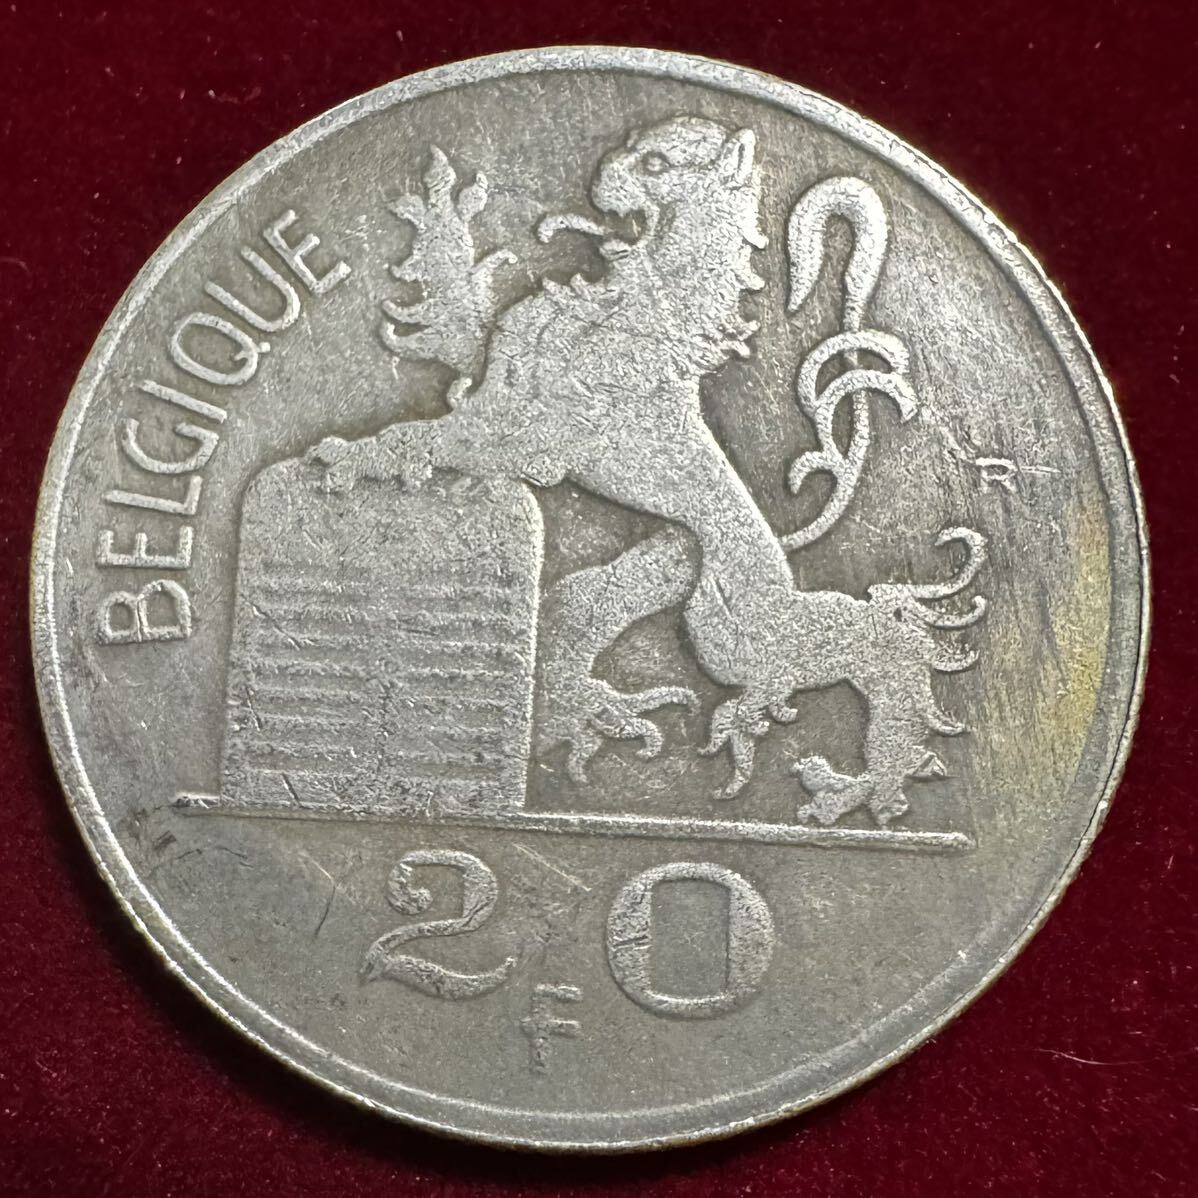 ベルギー アルベール1世 硬貨 古銭 1955年 ベルギー憲法 ライオン カドゥケウス 「伝令使の杖」 フラン コイン 外国古銭 海外硬貨_画像1